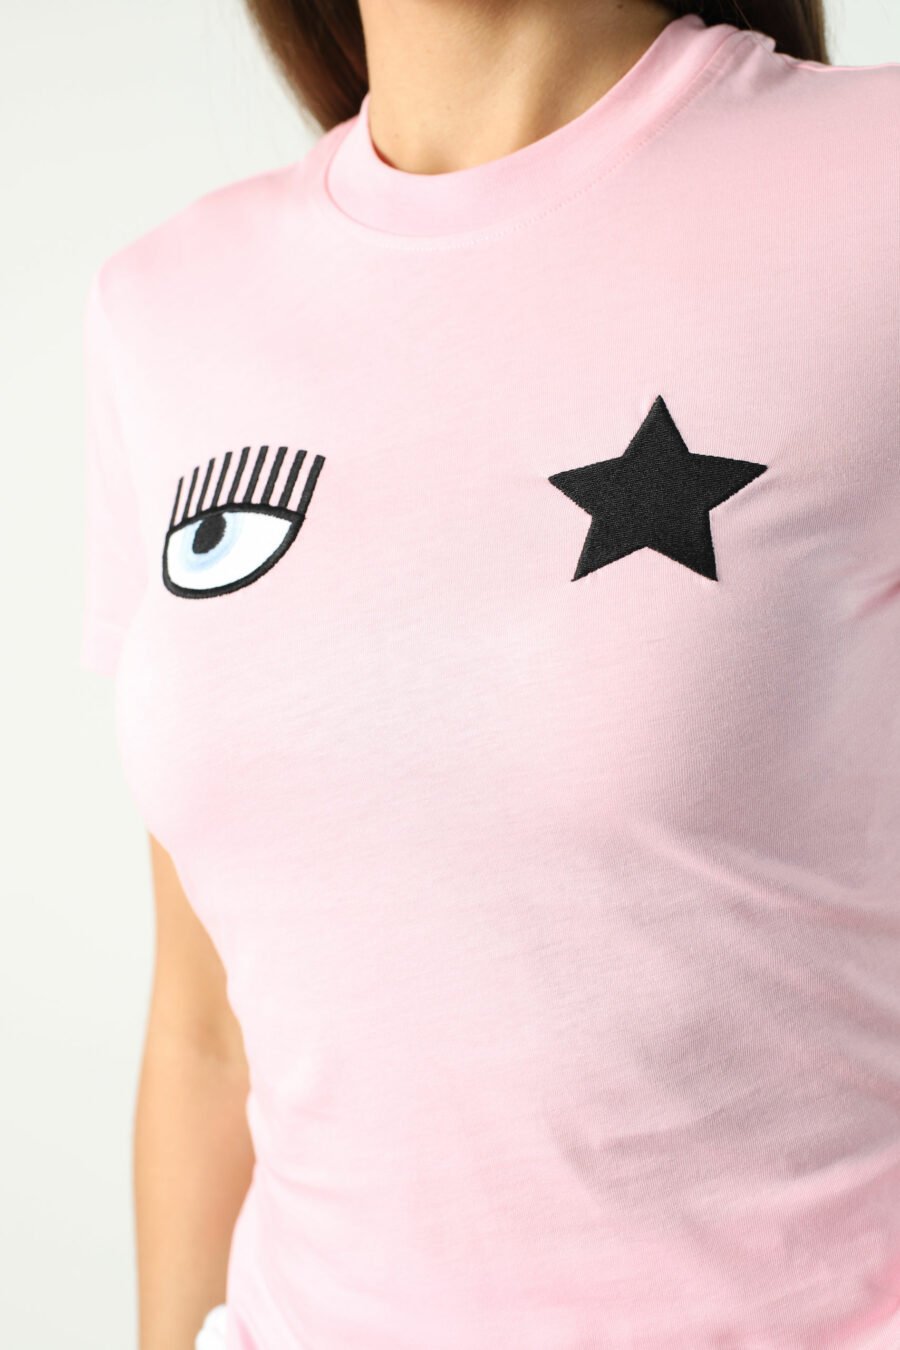 Rosa T-shirt mit Auge und Stern - Fotos 2697